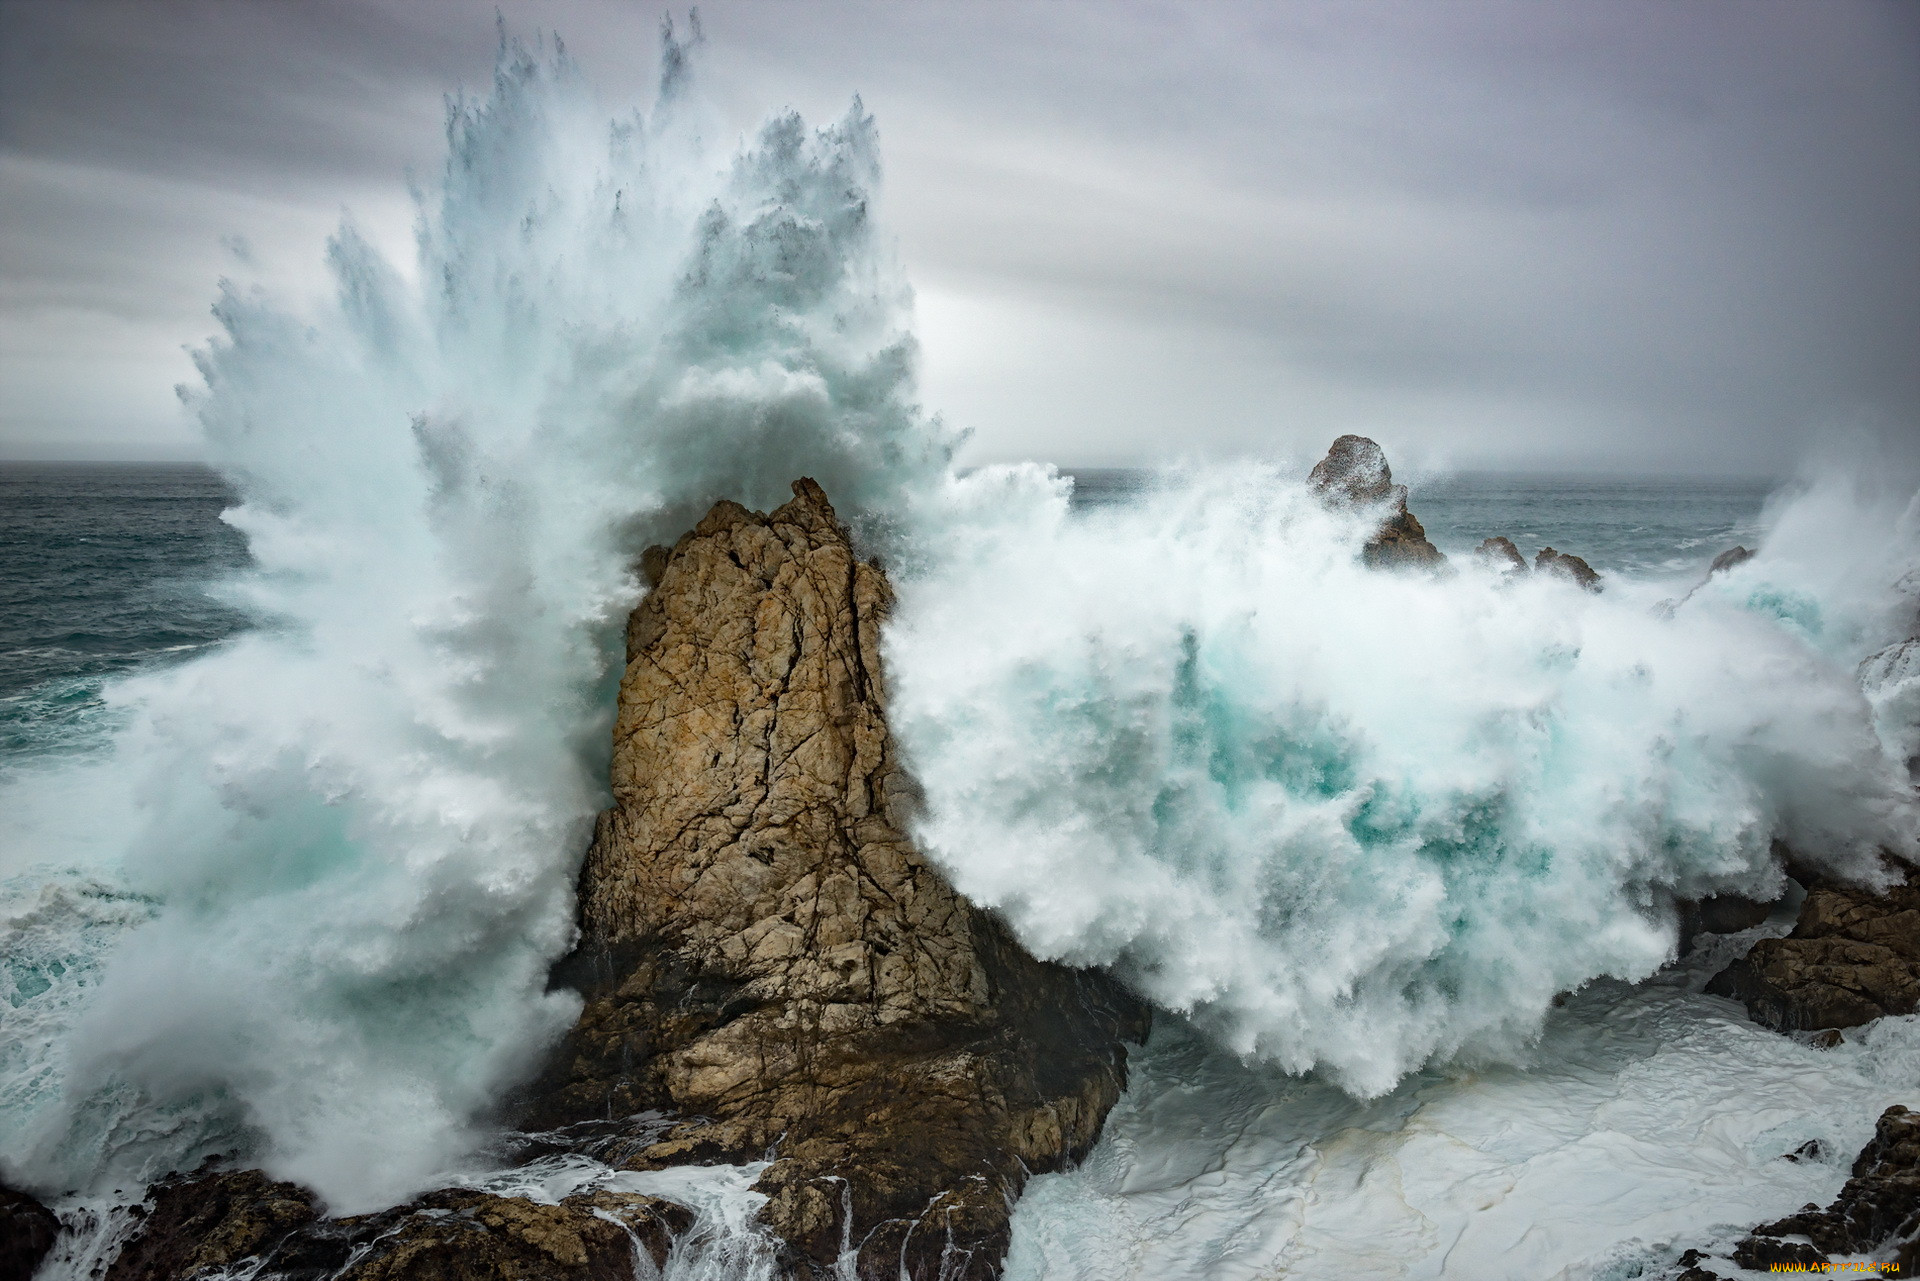 Подобен волною морскою. Море Утес шторм. Волны разбиваются о скалы. Бушующее море. Стихии природы.